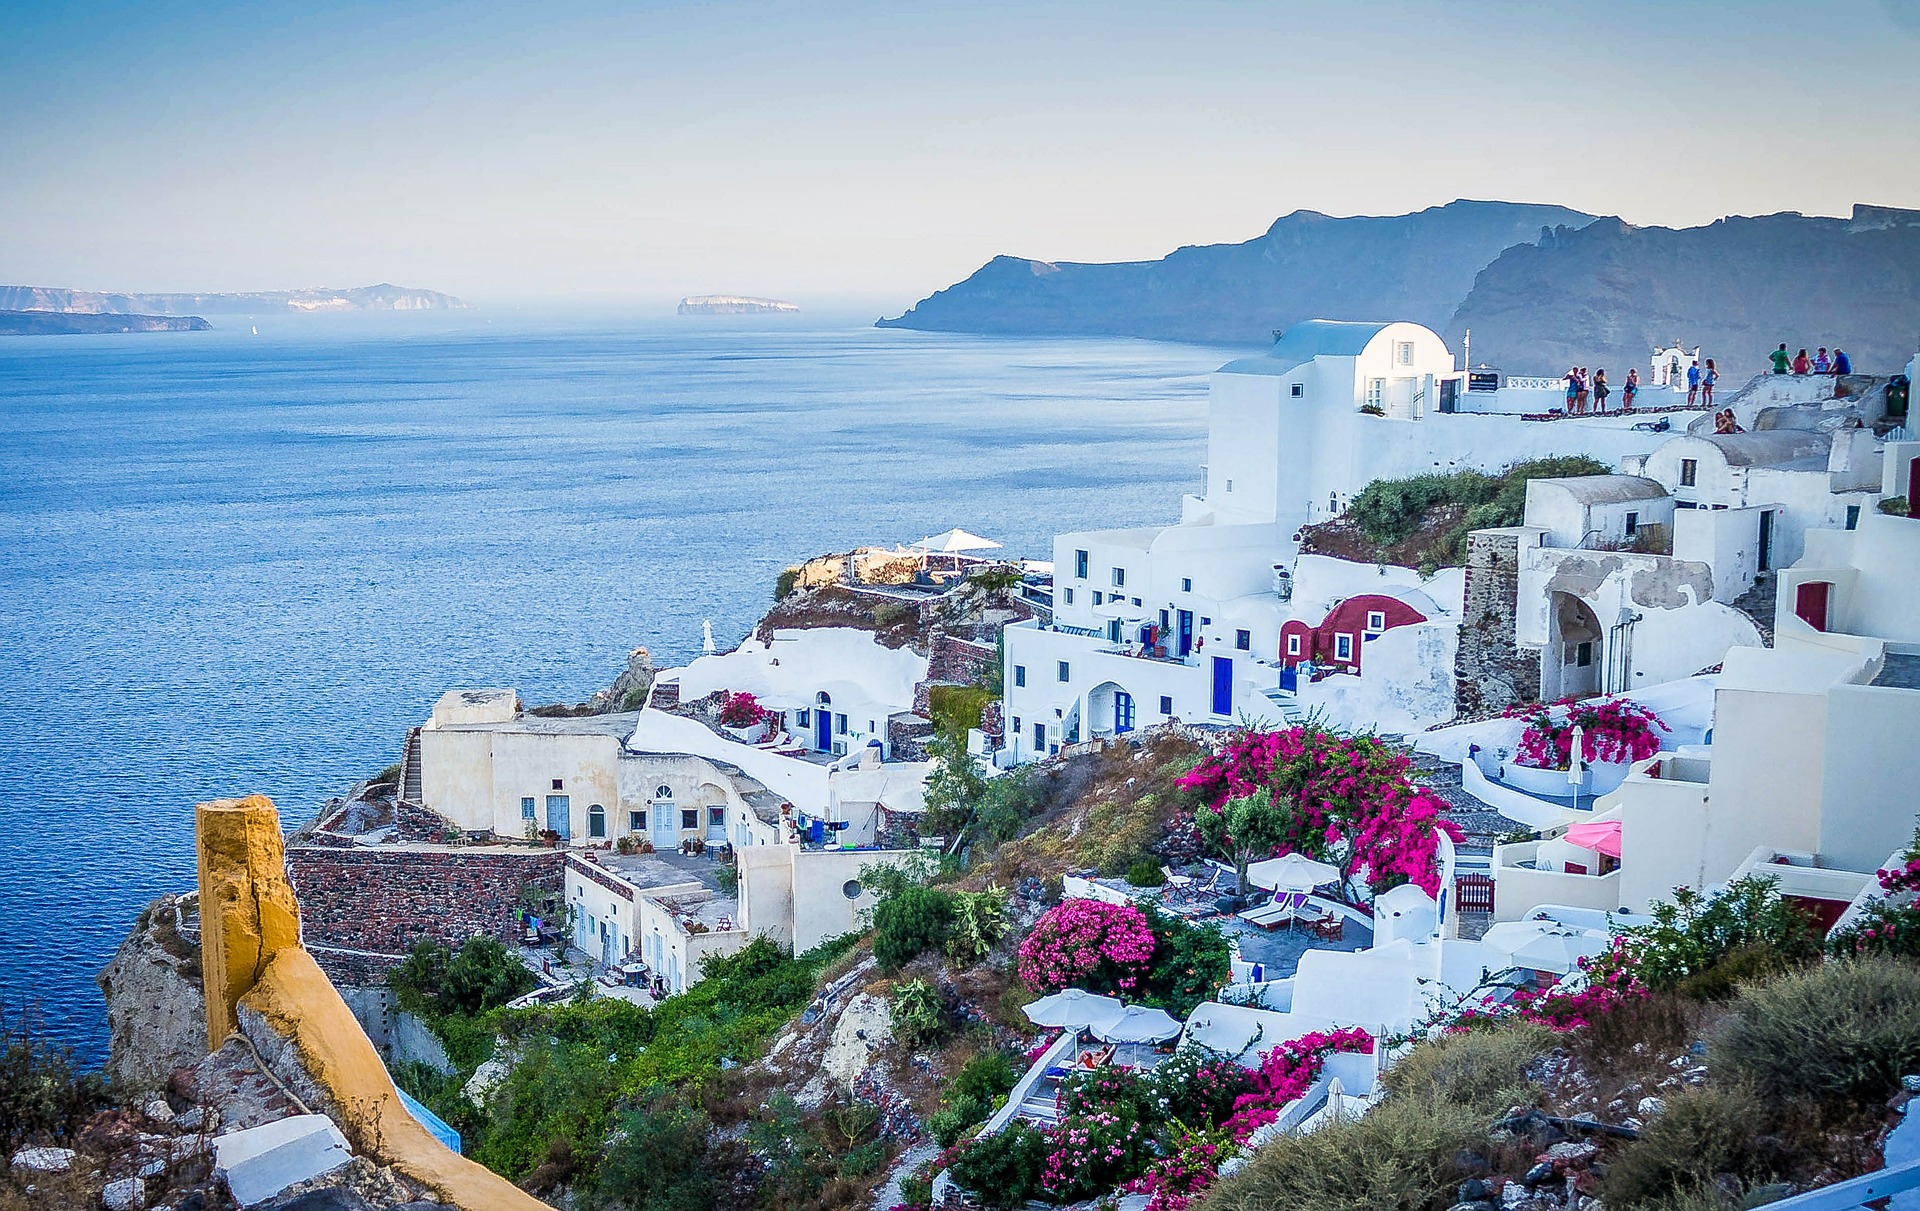 그리스 산토리니 여행경비 계산, 여행정보, 날씨, 추천 투어 (유럽 배낭 여행 비용)